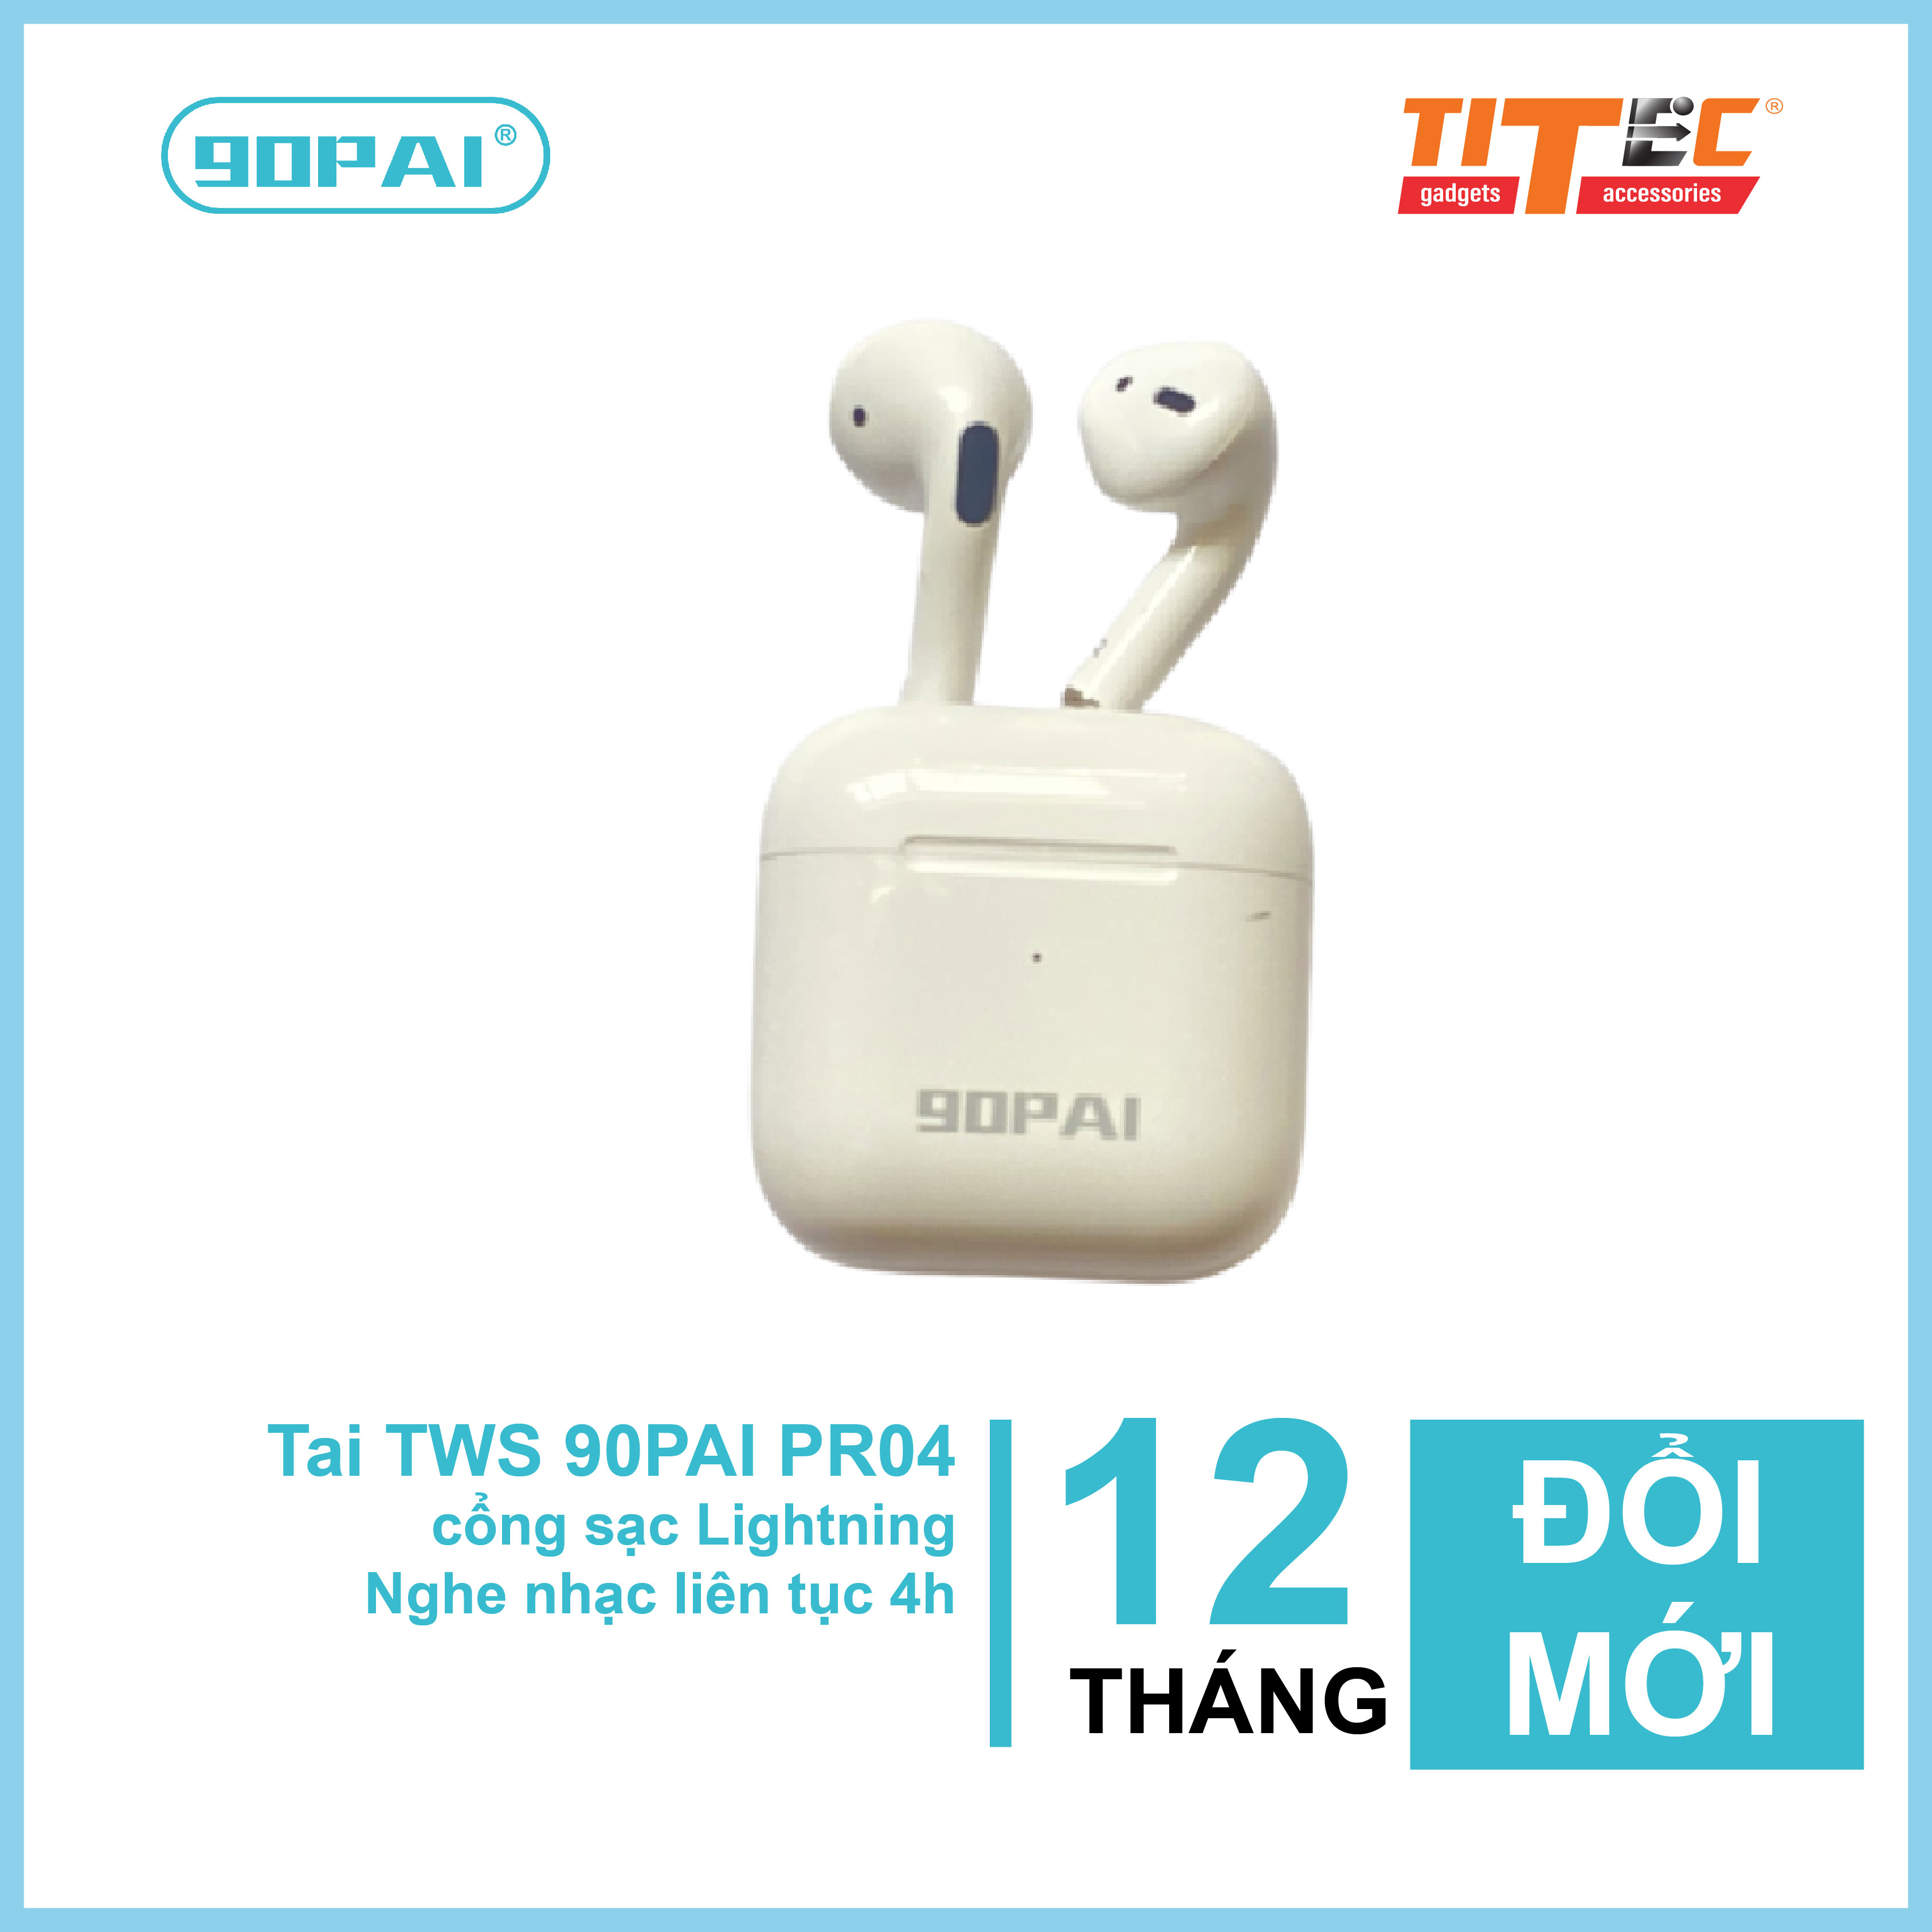 Tai nghe Truewireless 90PAI Pr04 Bluetooth 5.0, thiết kế nhỏ gọn dễ mang đi, nghe và đàm thoại 2 tai, nút bấm cảm ứng - hàng chính hãng